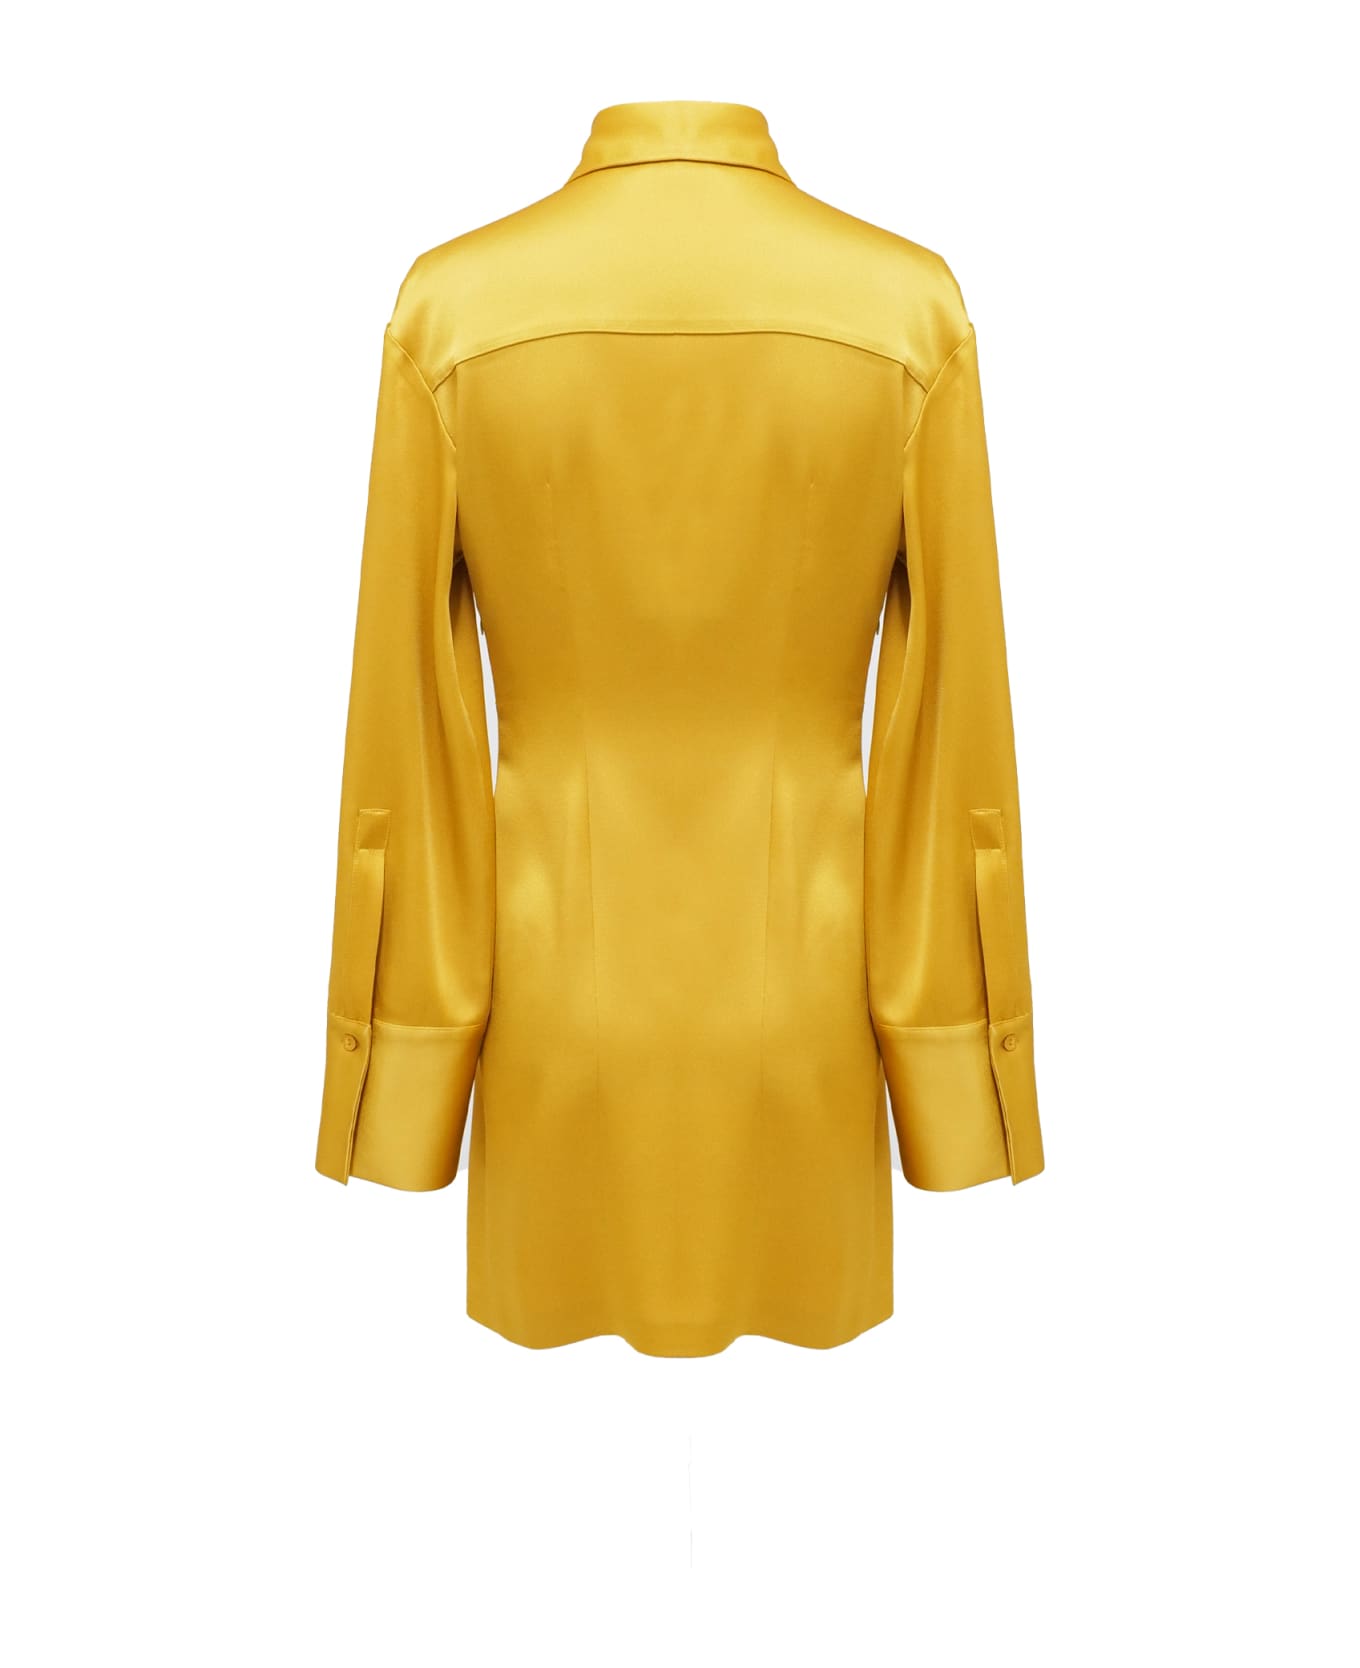 Blumarine Dress - Yellow